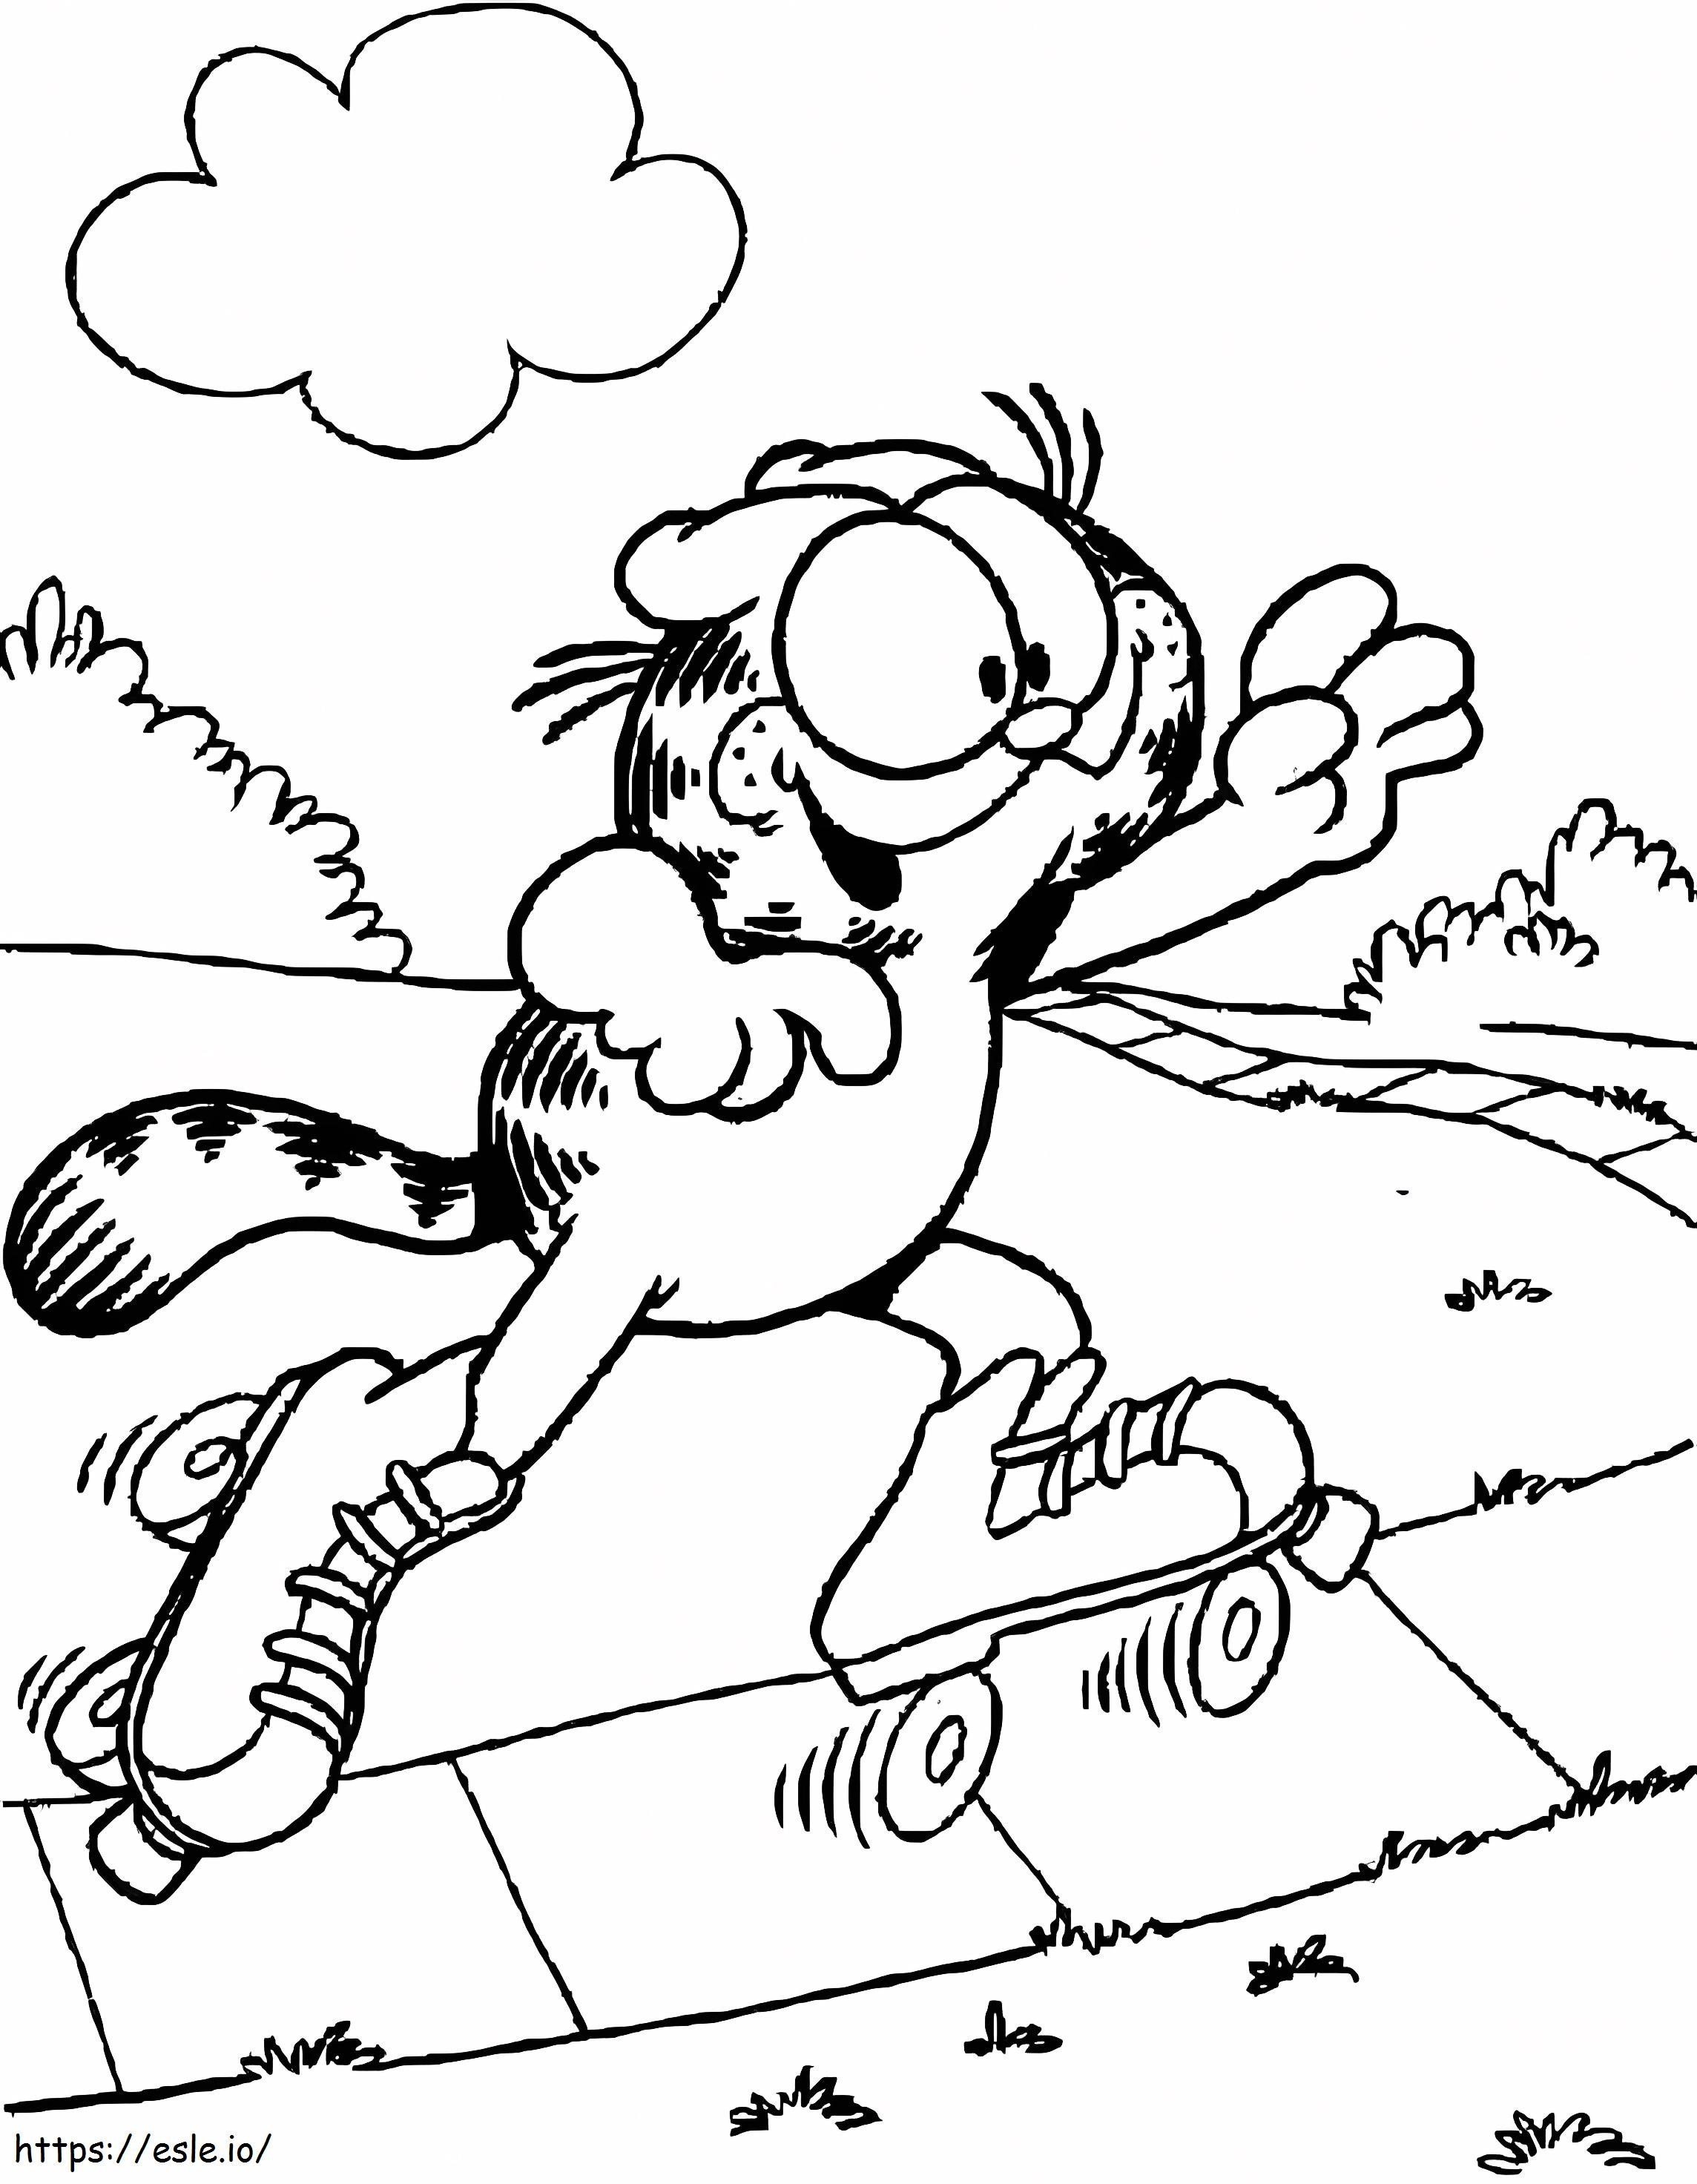 Coloriage Garfield sur patins à roulettes à imprimer dessin